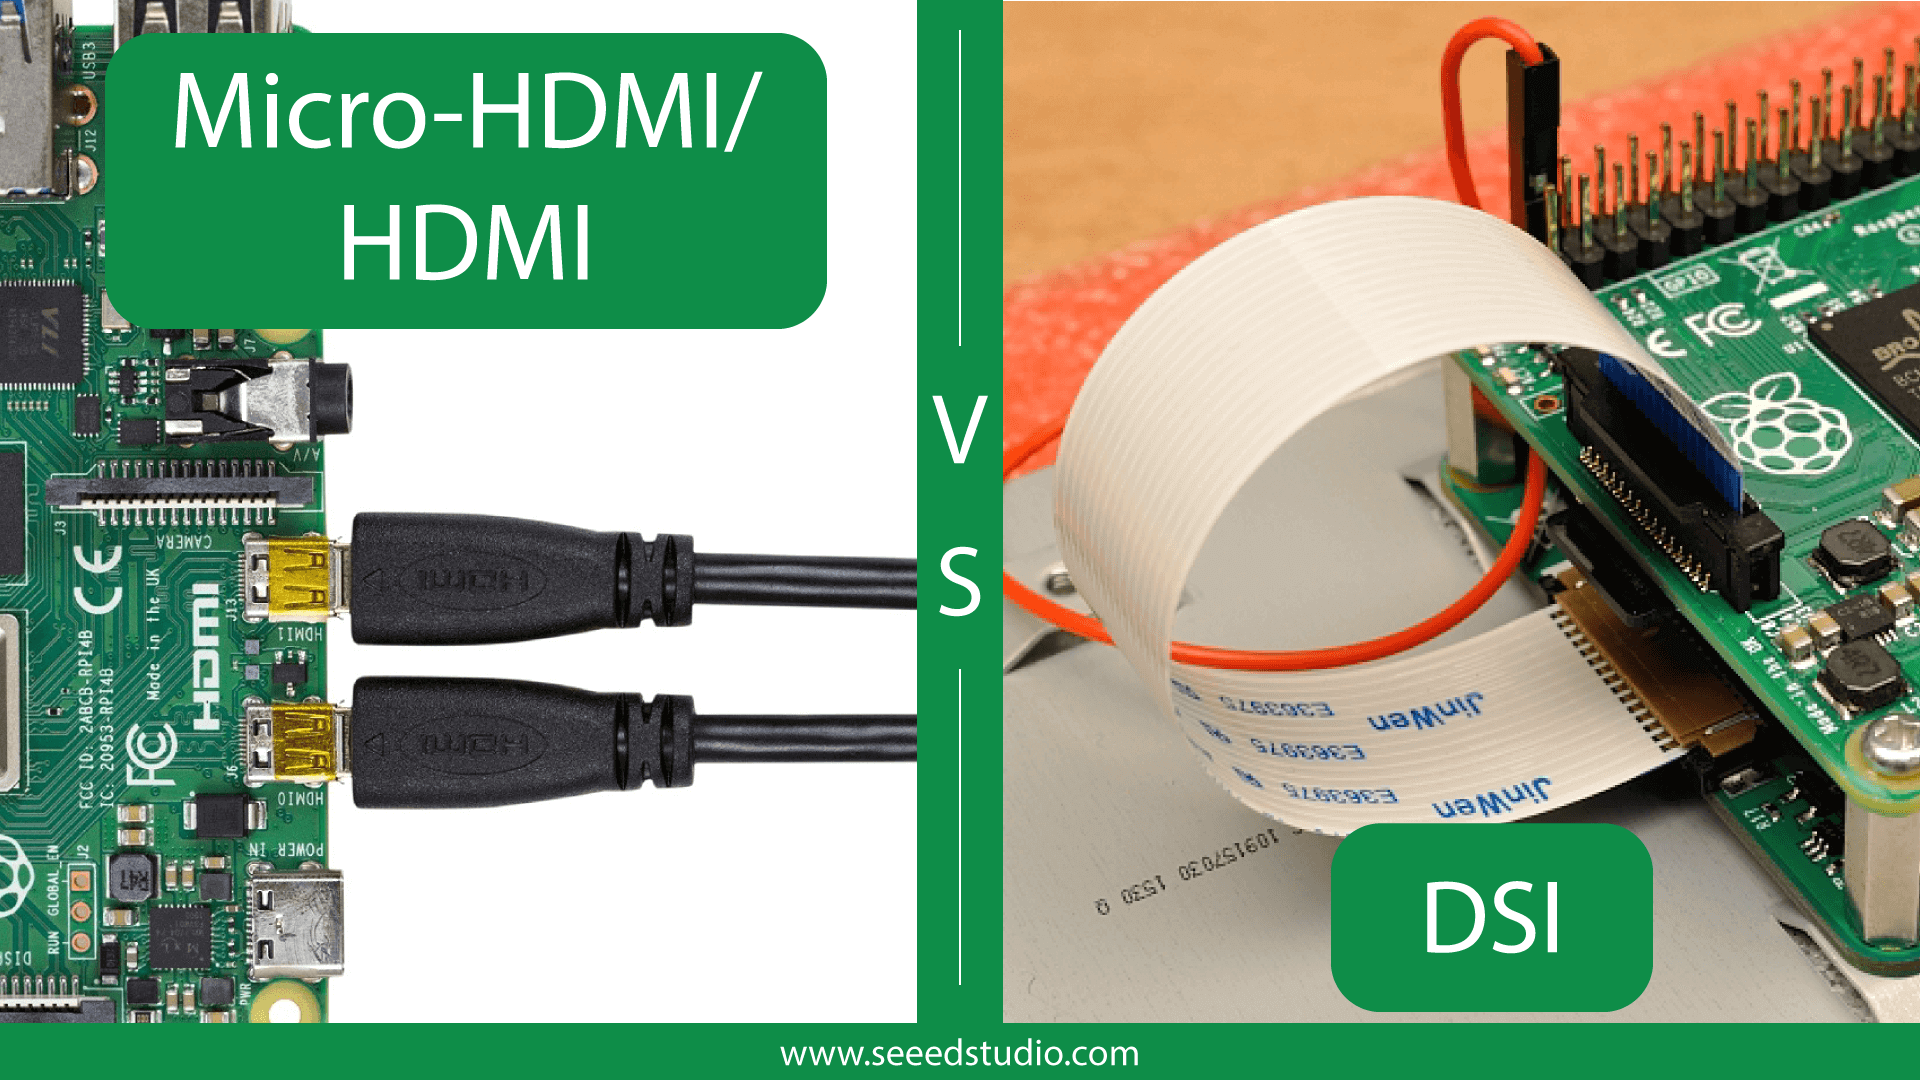 HDMI/Micro-HDMI vs DSI – Raspberry Pi 4 Display Connectors - Latest Open Tech